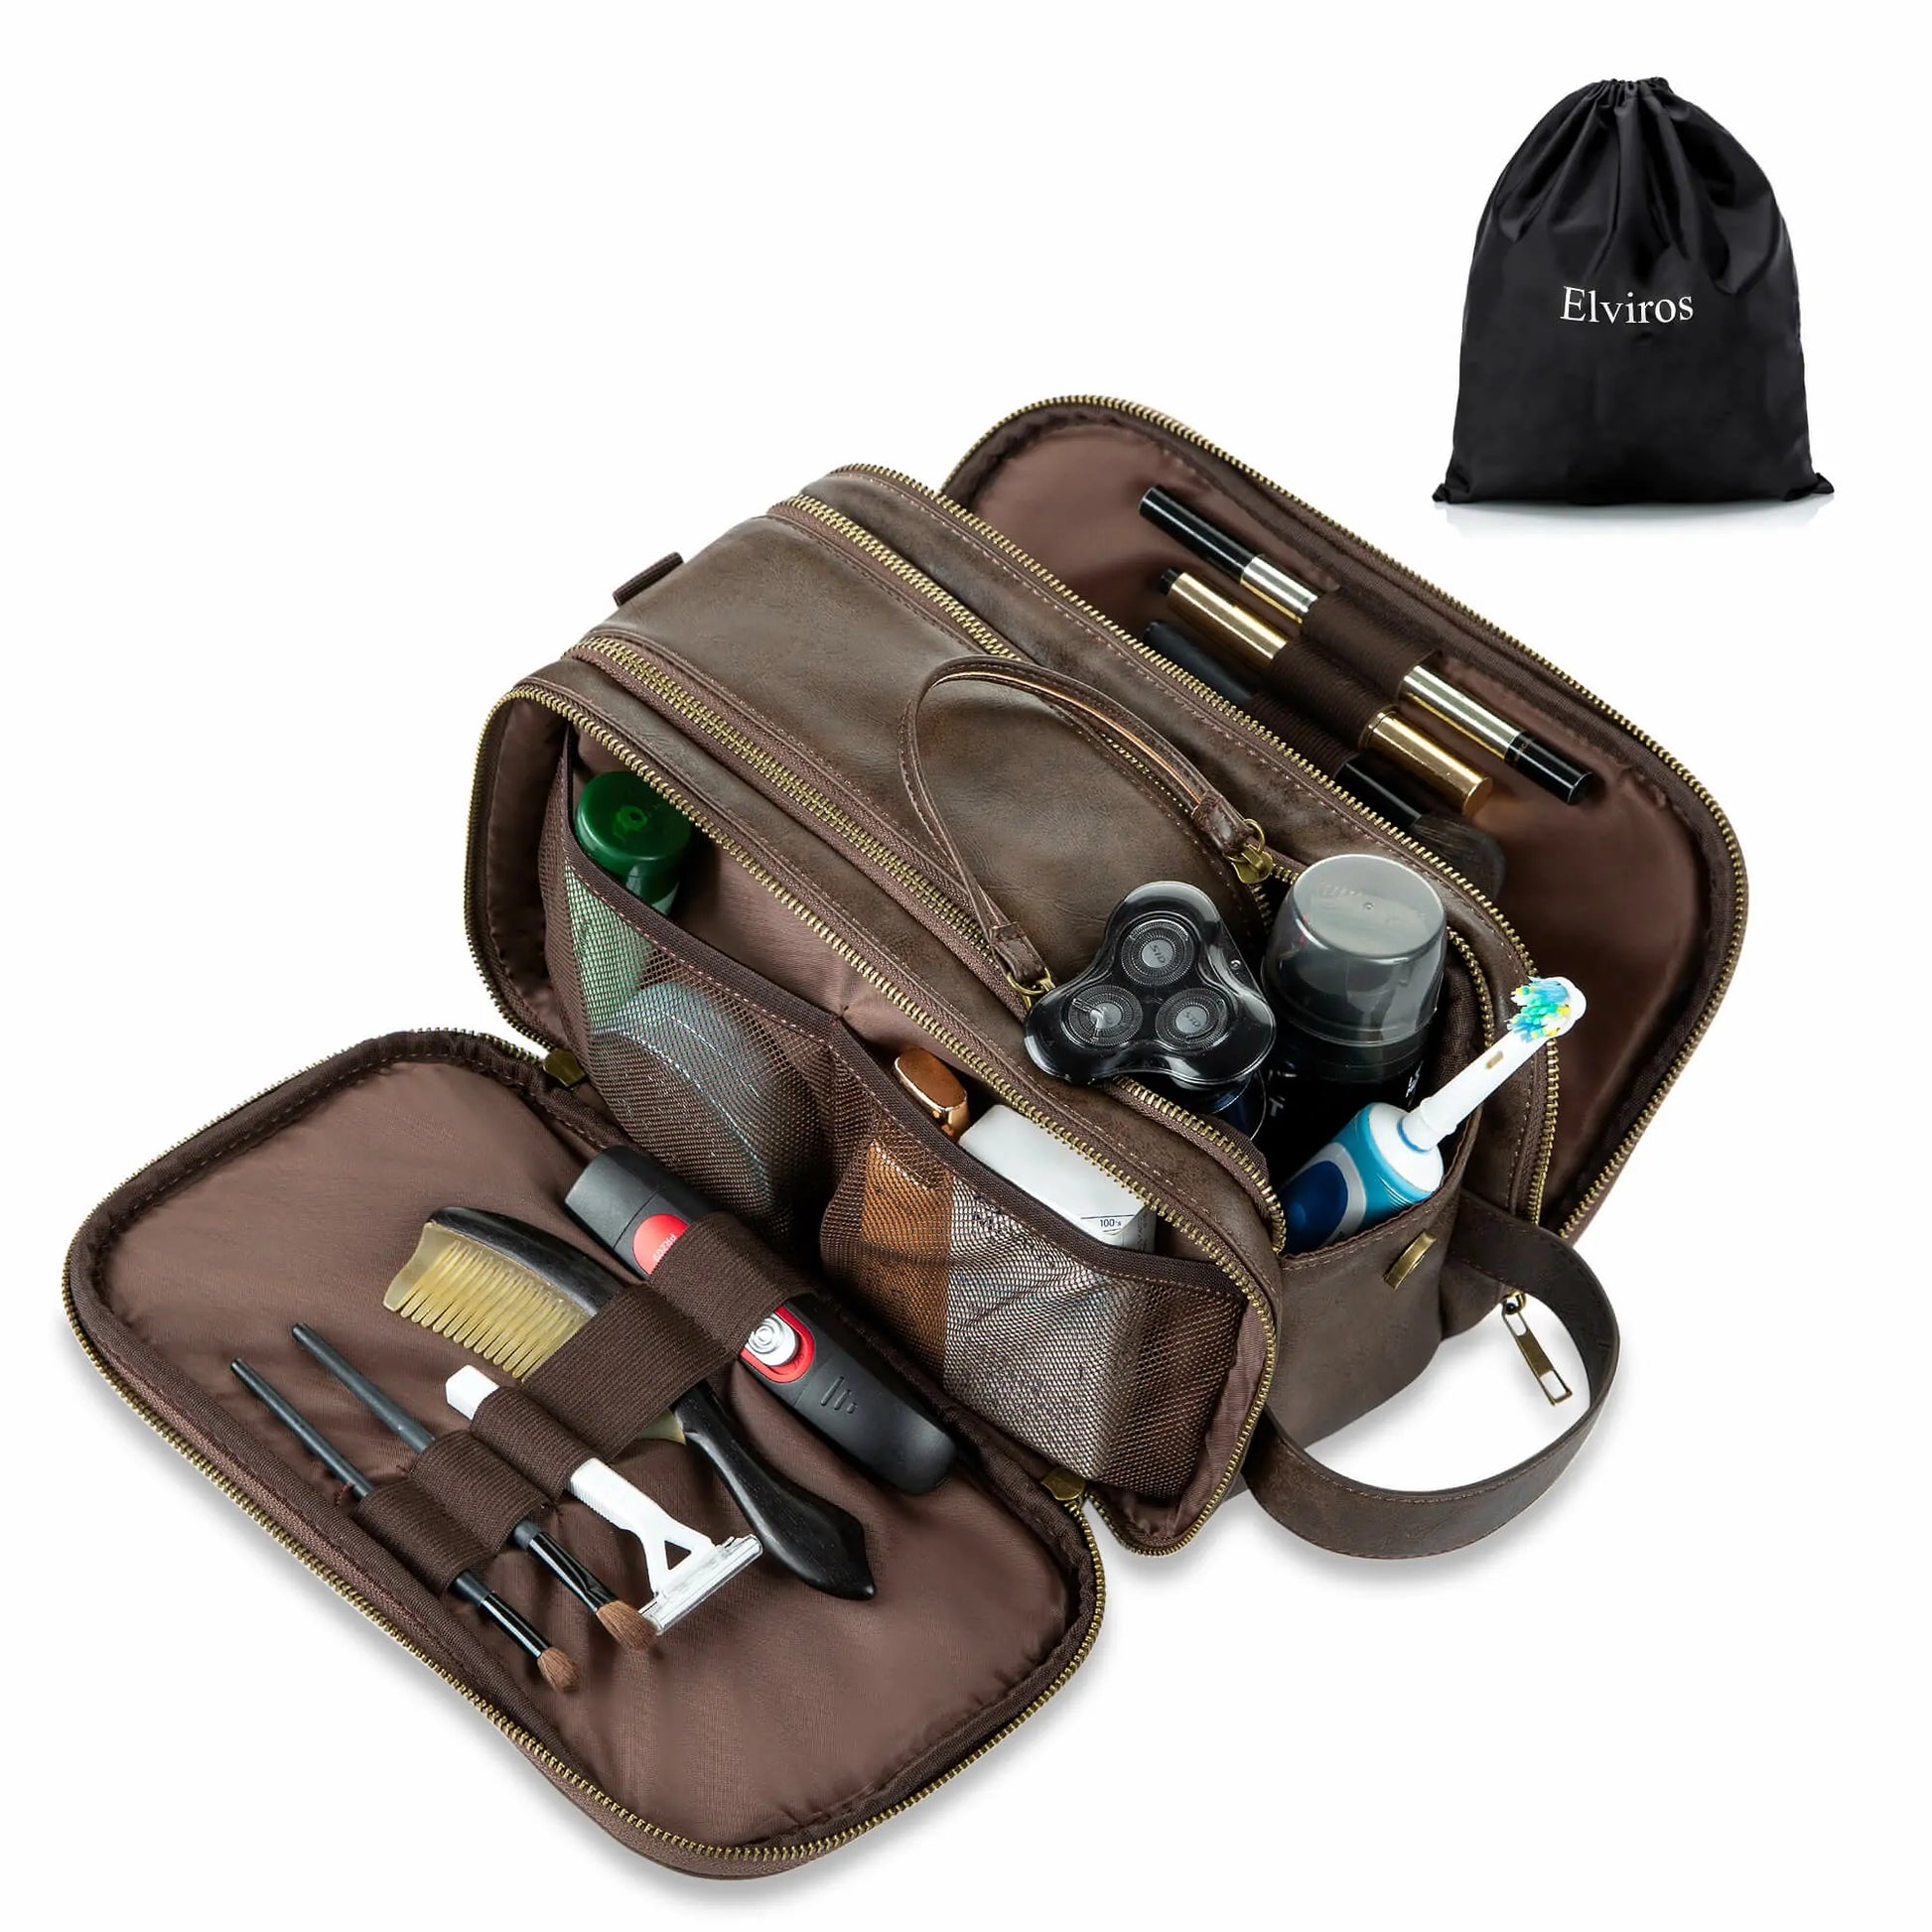 emissary Men's Toiletry Bag, Leather and Canvas Travel Toiletry Bag, Dopp  Kit for Men, Travel Bathroom Bag Men's Shaving Kit, Travel Kit Small Bags